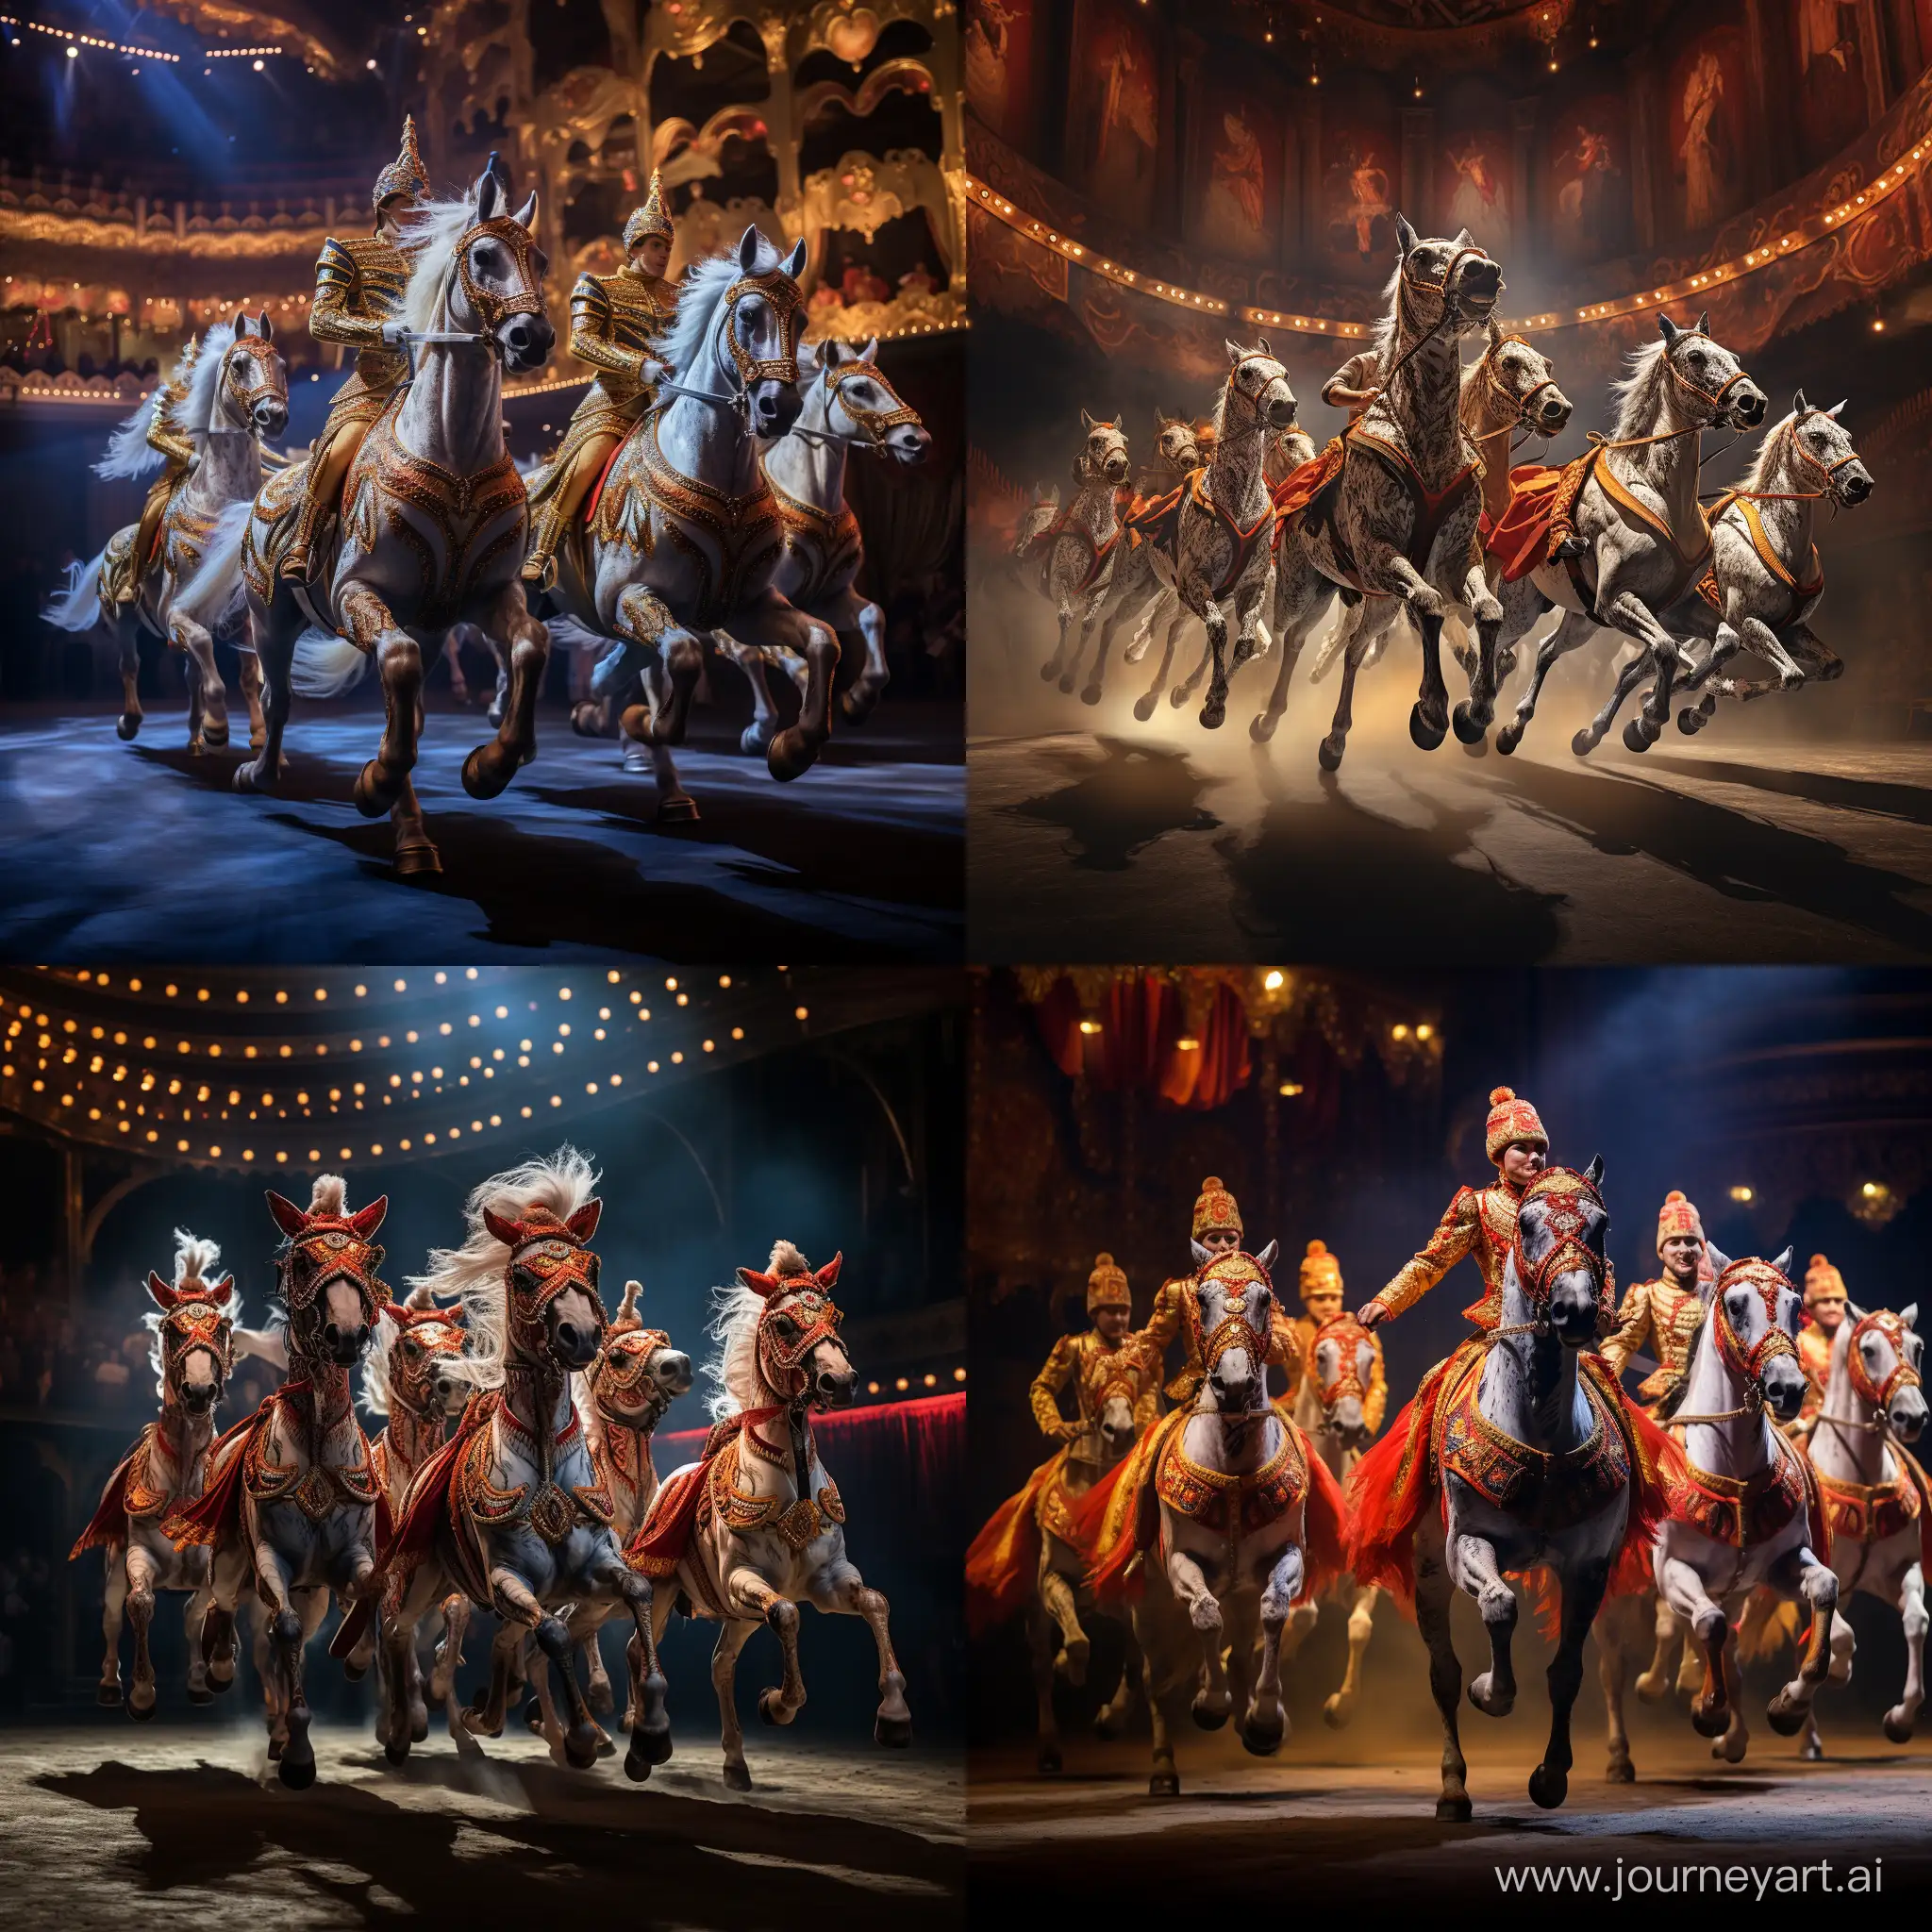 Ярко украшенные лошади гарцуют на представлении в конном театре, на некоторых лошадях сидят актёры театра в костюмах 19 века,сцена театра в ярких огнях, фотография, гиперреализм